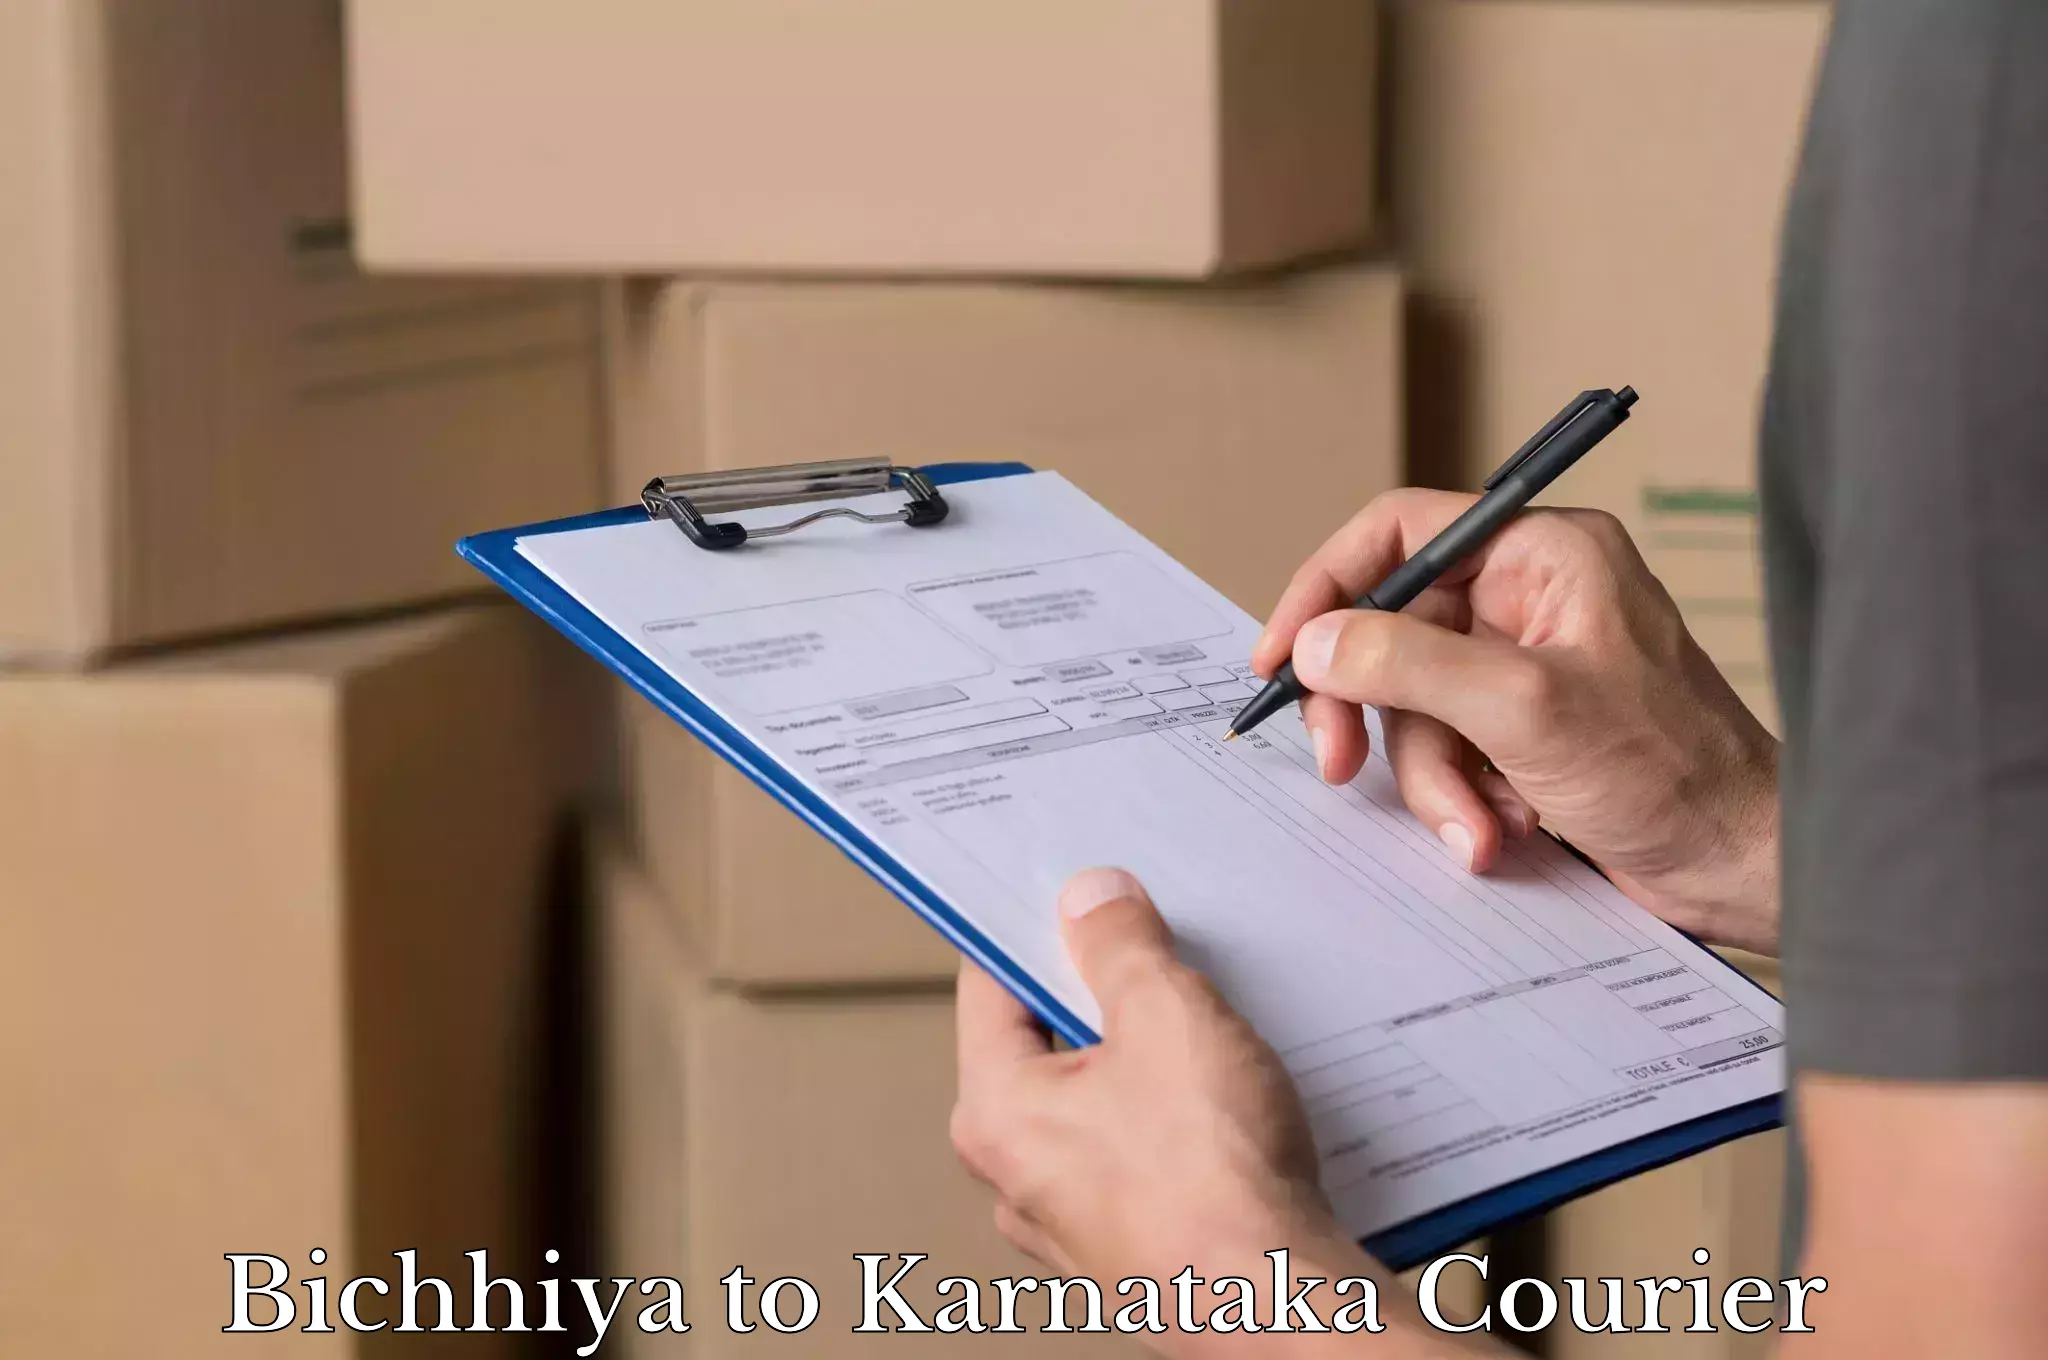 Personal effects shipping Bichhiya to Kanjarakatte